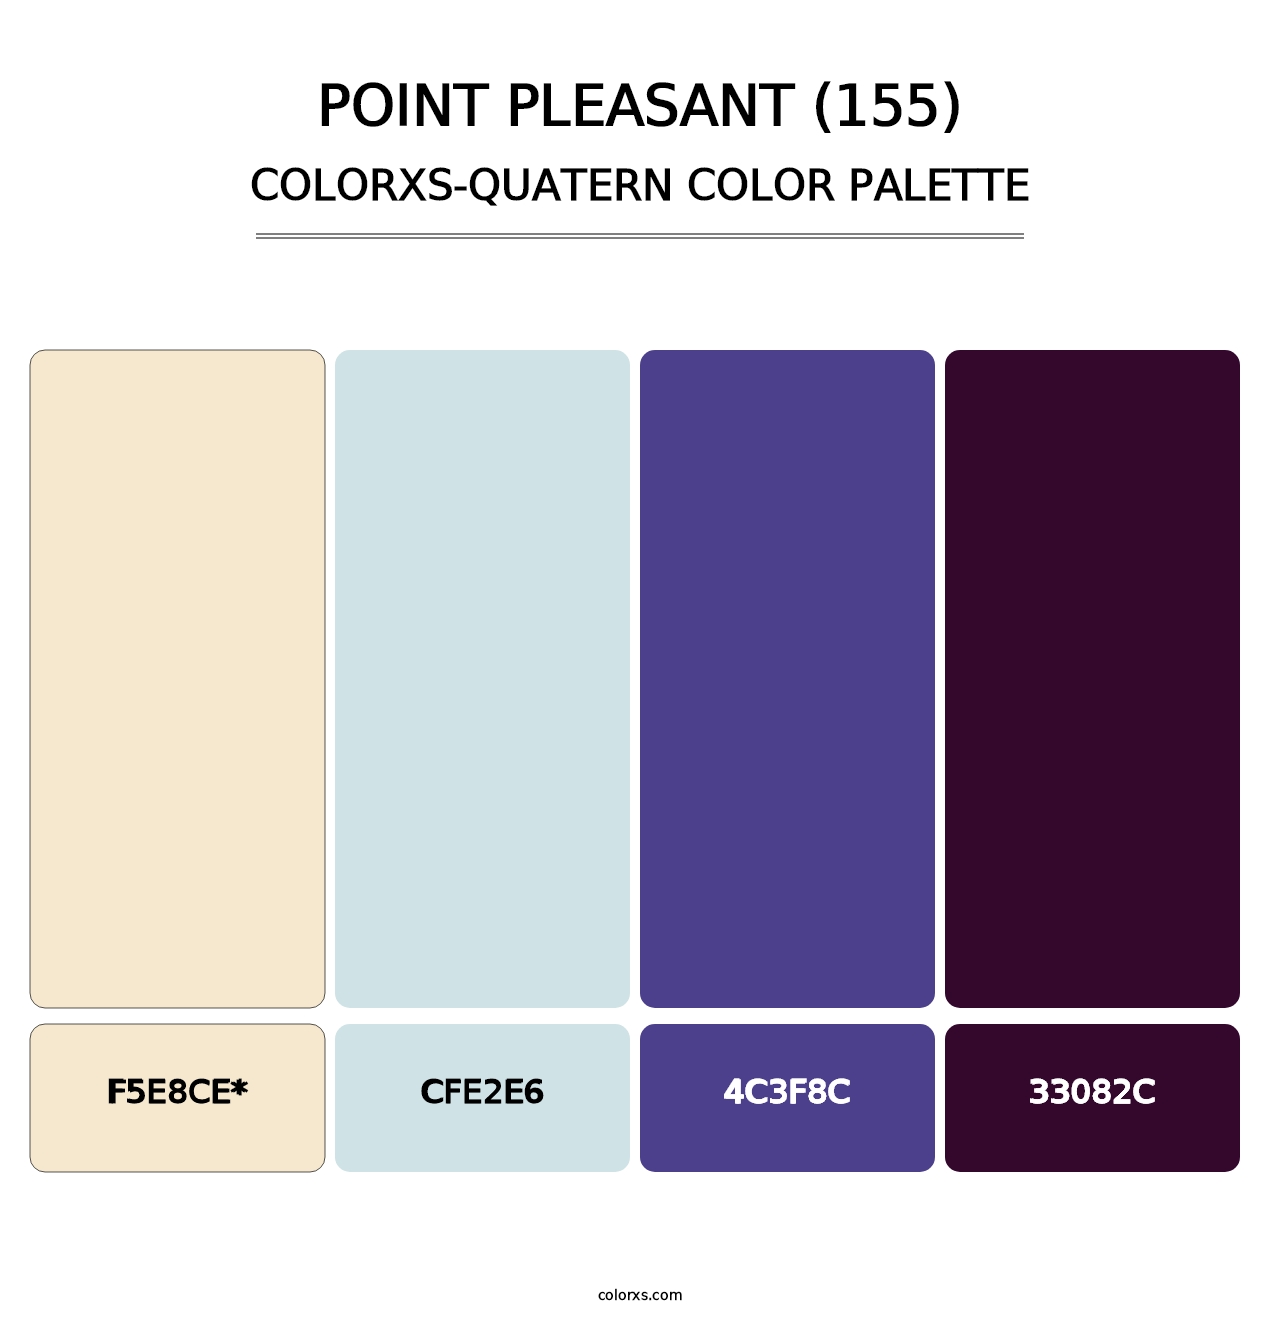 Point Pleasant (155) - Colorxs Quatern Palette